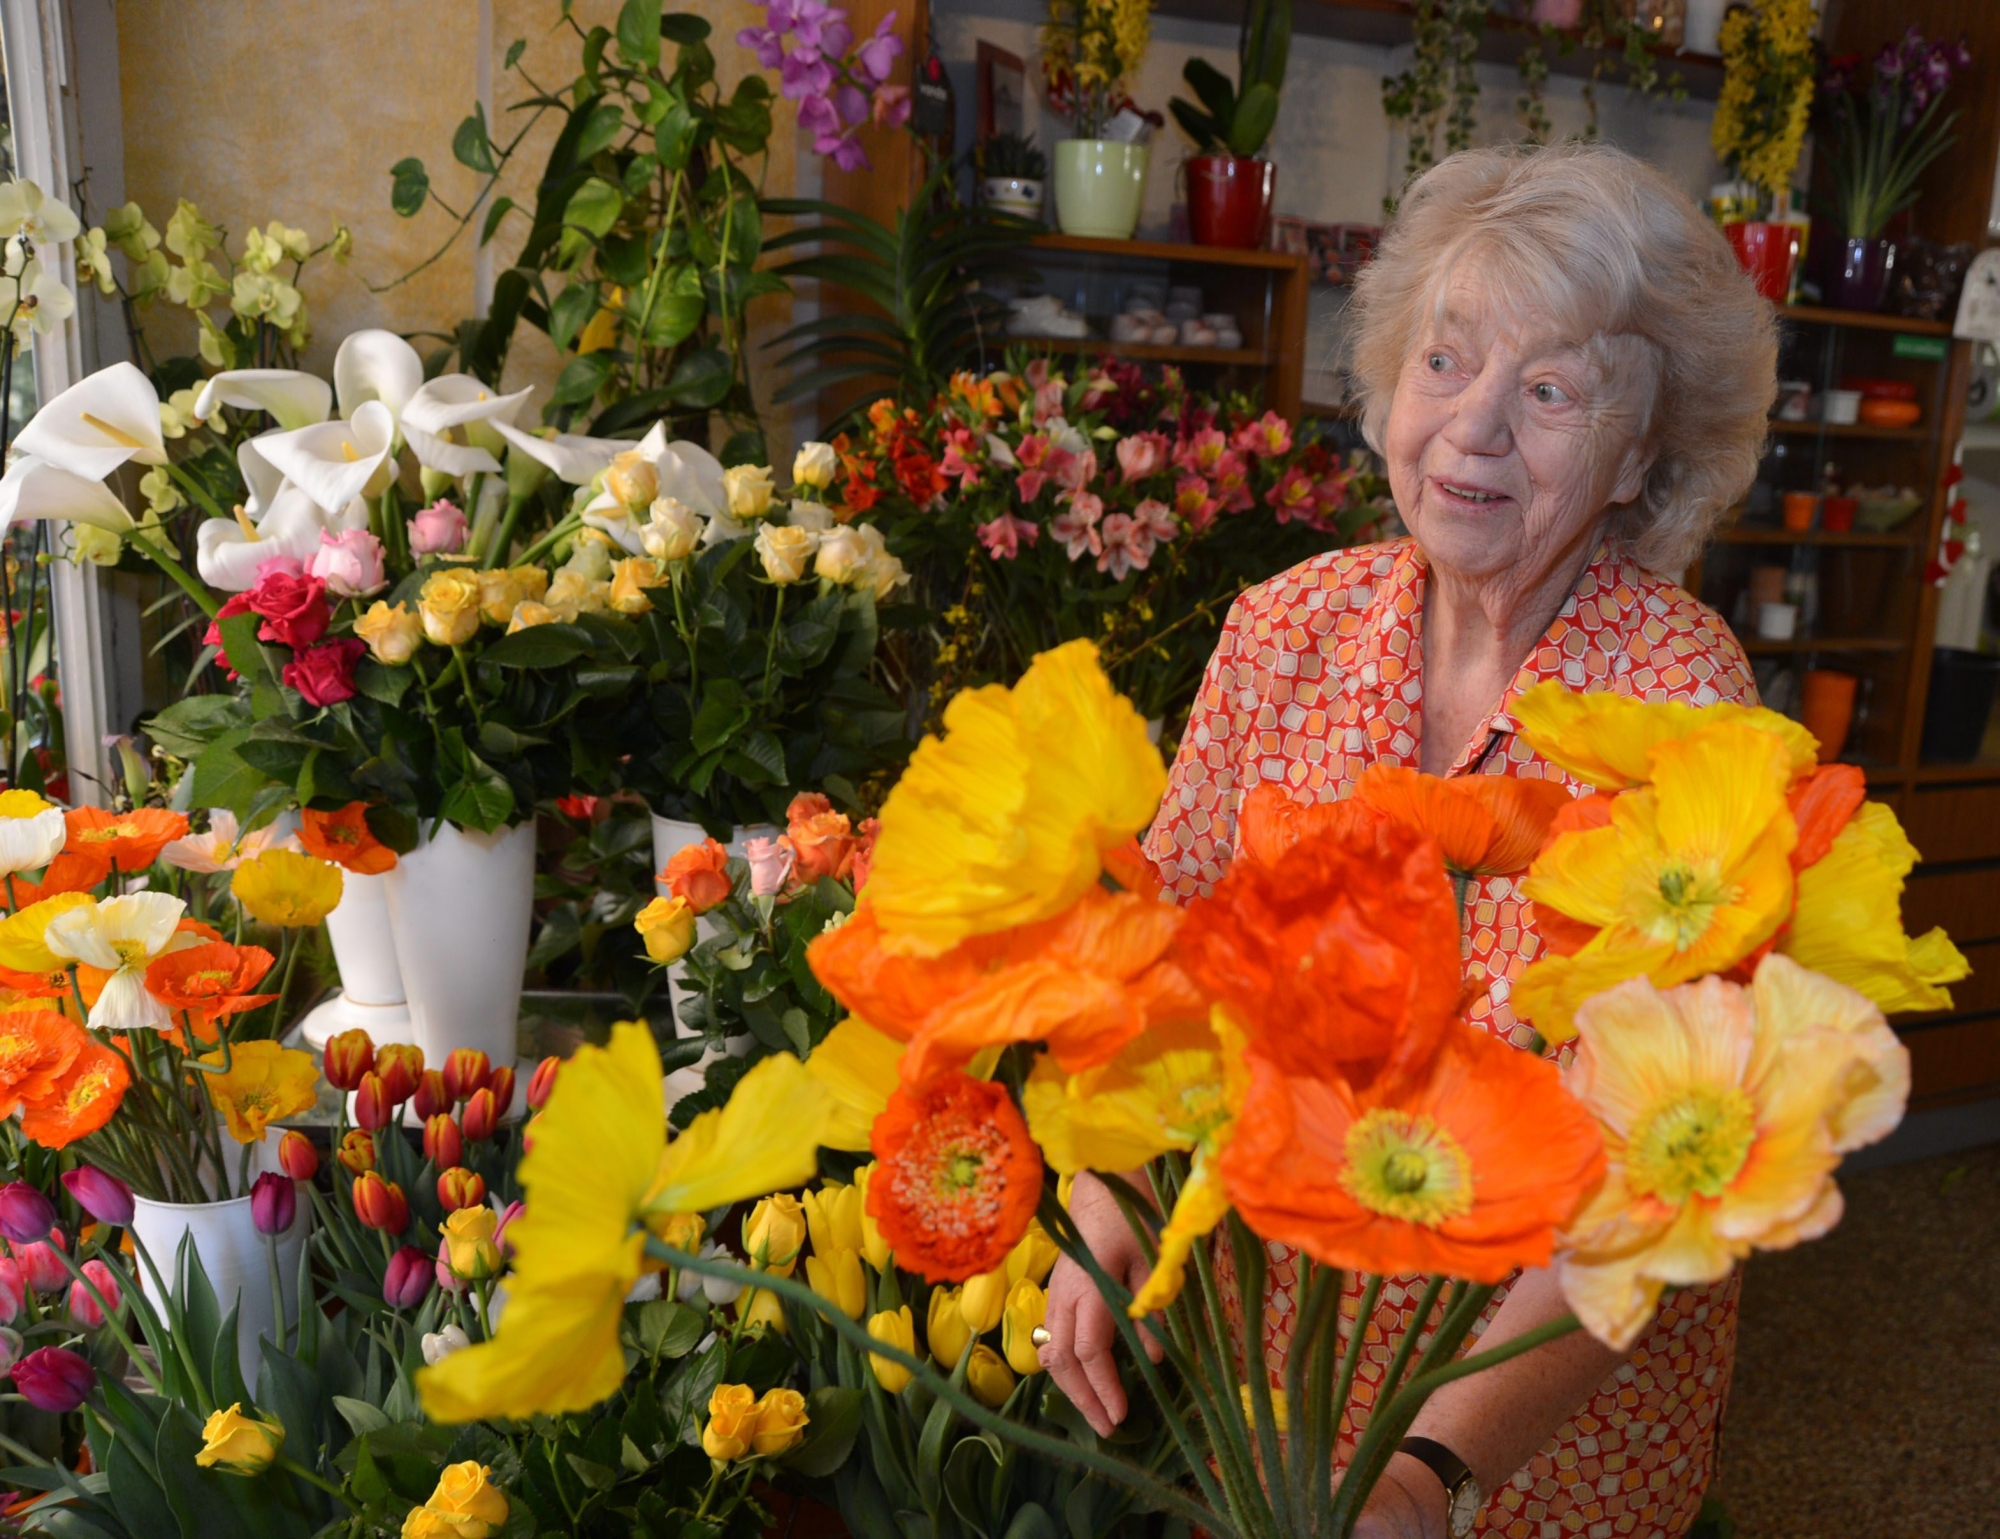 Mme Ruth Frey fleuriste de 82 ans la plus ancienne commercante du Locle encore en activite
Le Locle 18 avril 2013
Photo R Leuenberger